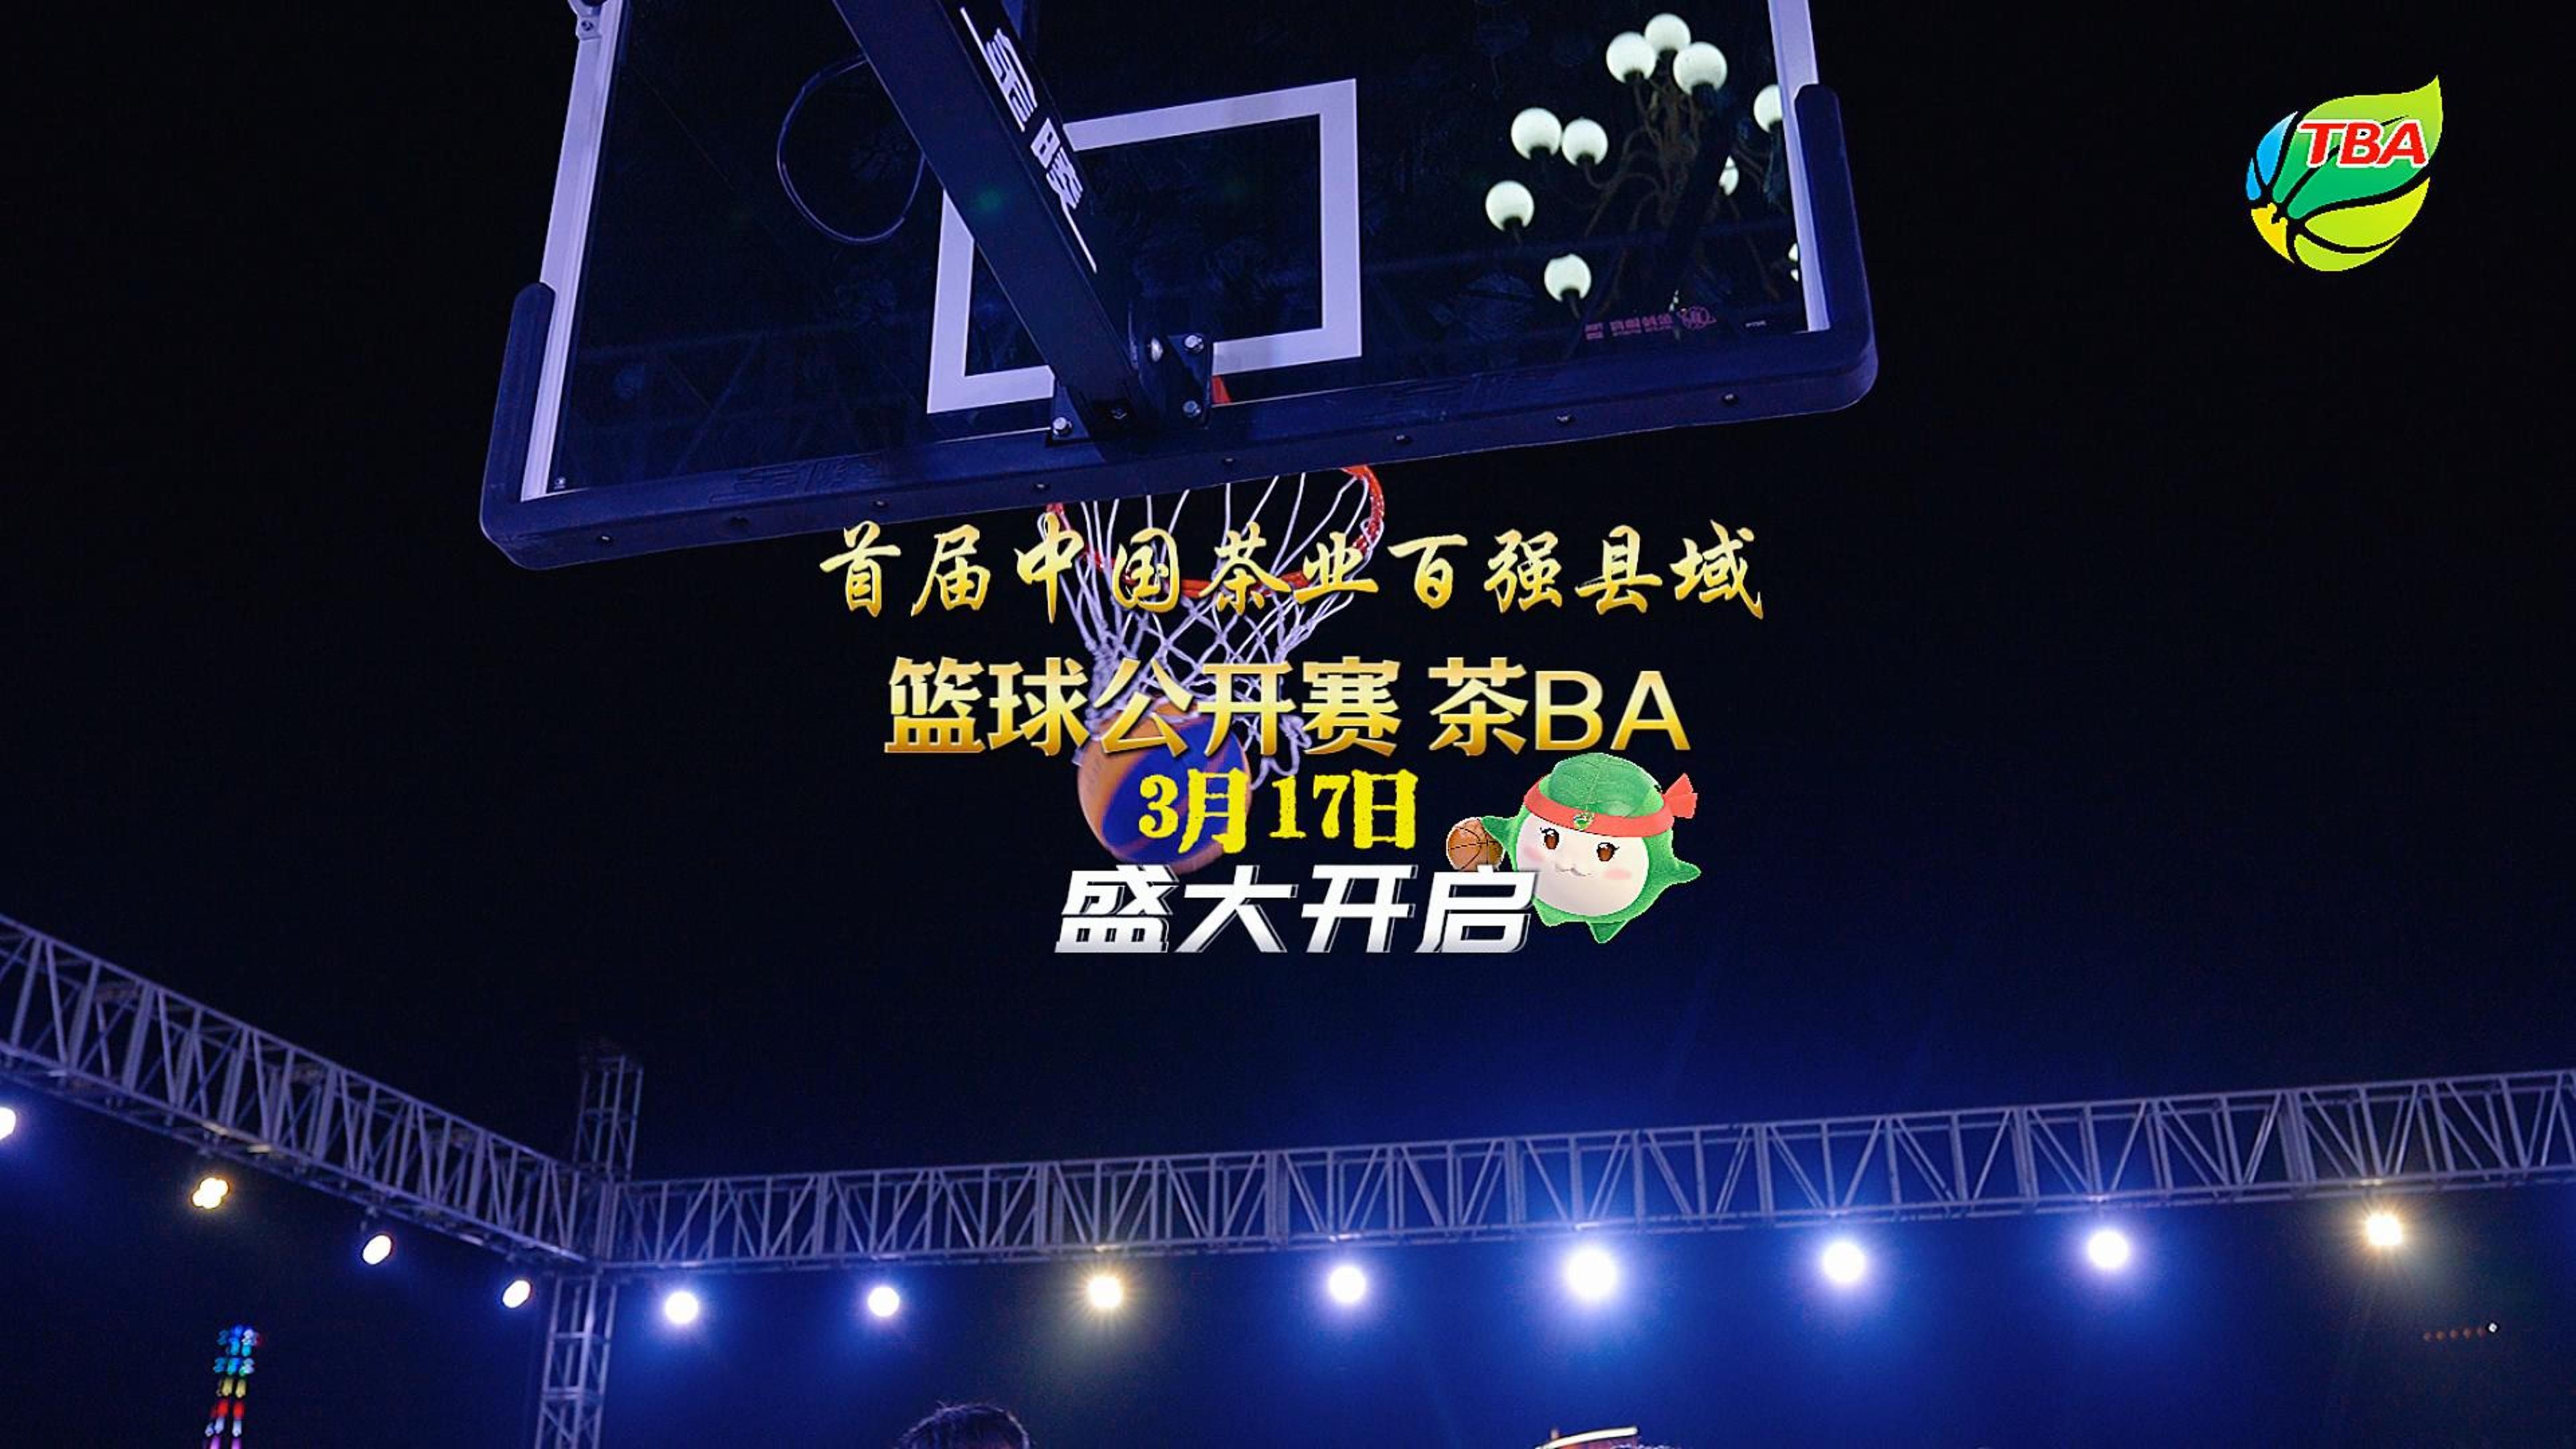 首届中国茶业百强县域篮球公开赛（茶BA），3月17日盛大开启！